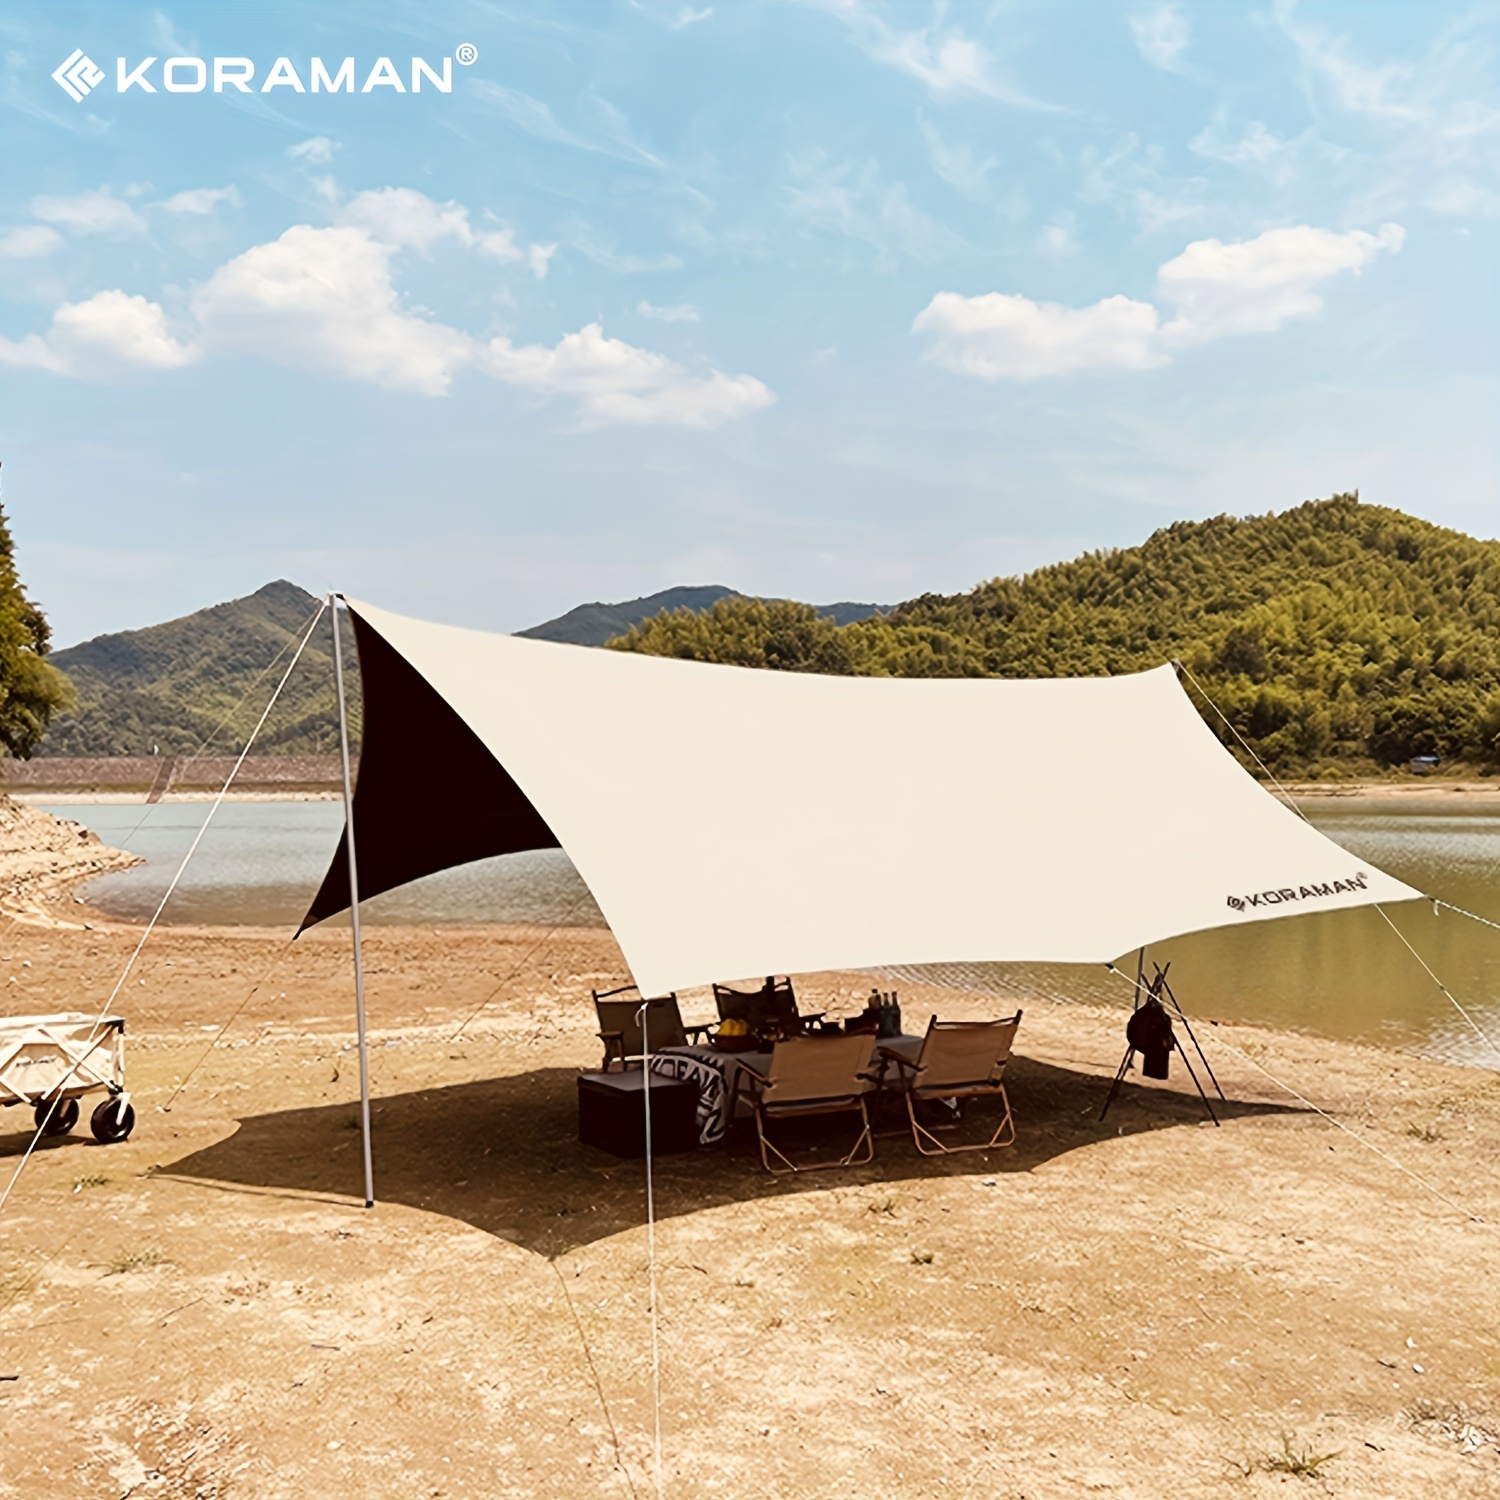 Liesellove – Camping-car familial aventureux bricolage avec tente